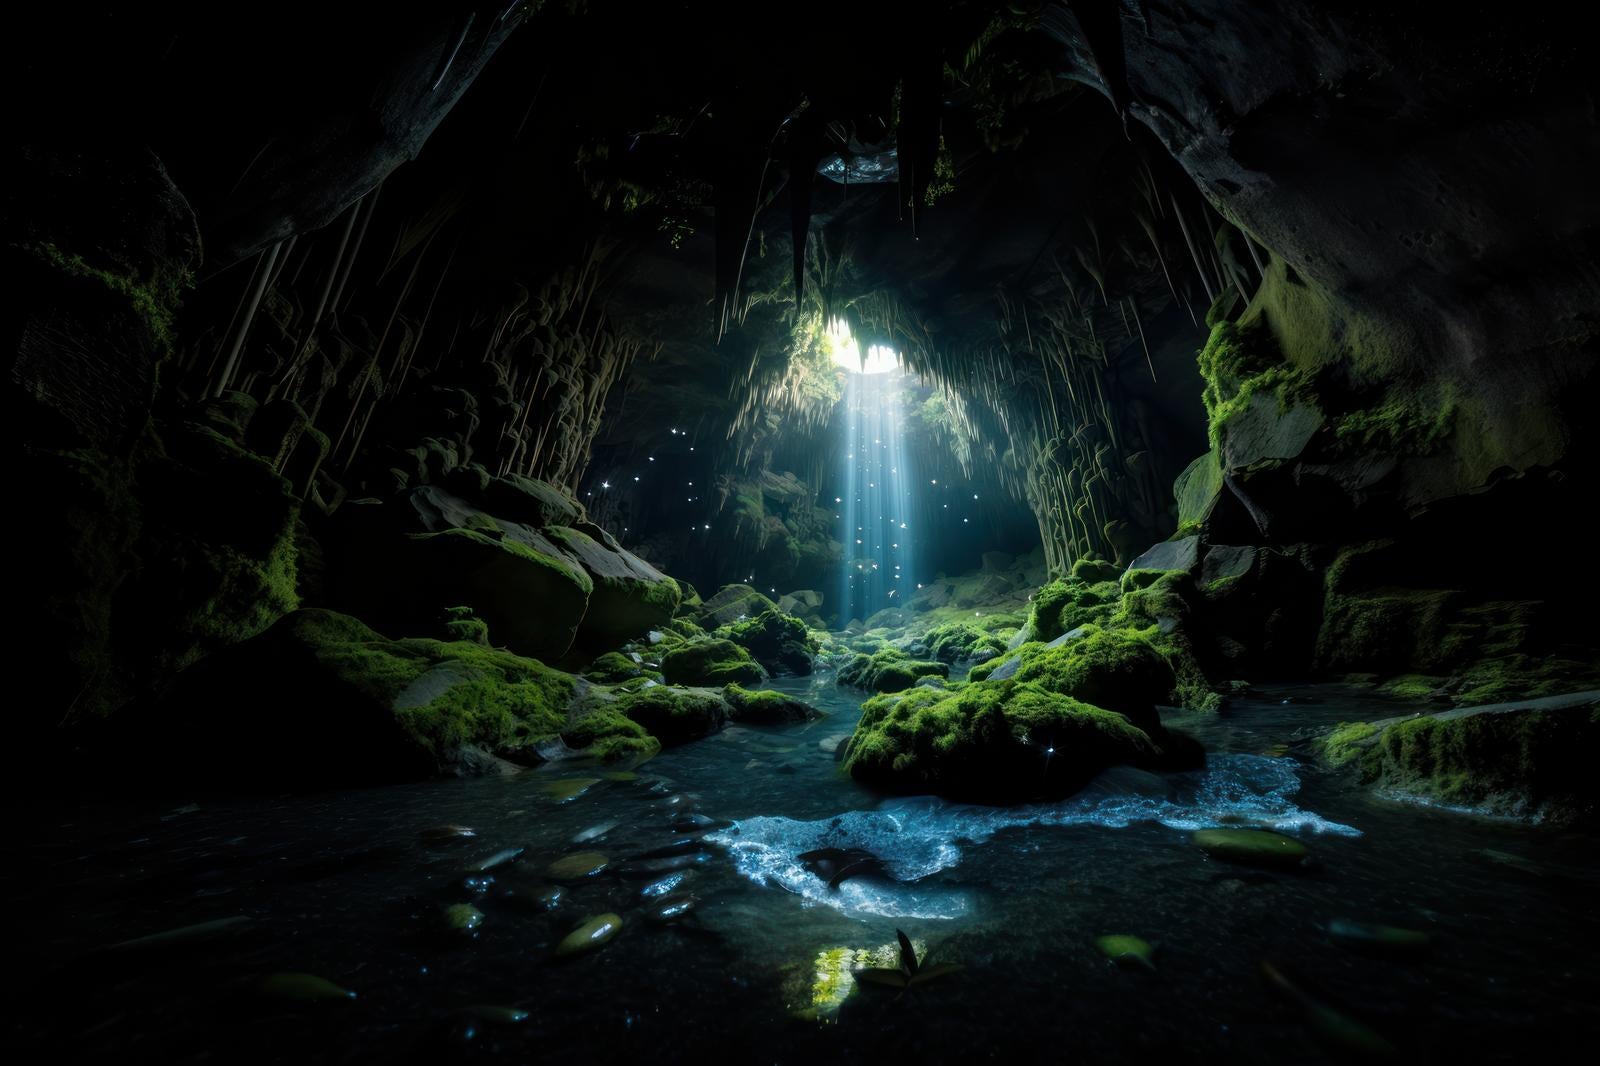 「苔生す洞窟と鍾乳洞の風景」の写真